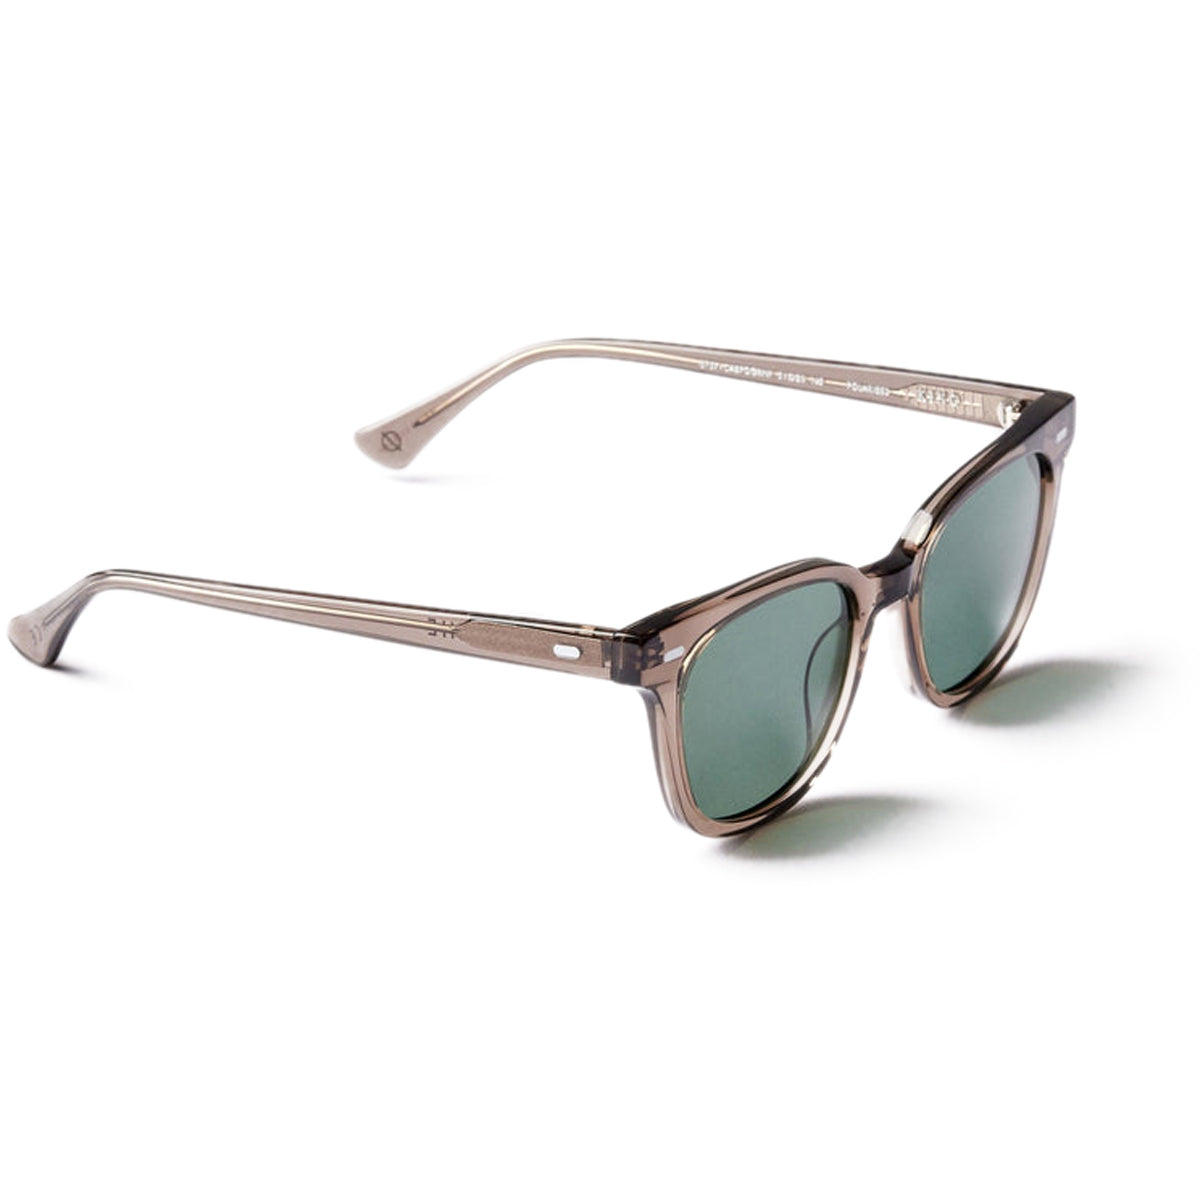 Epokhe Kino Sunglasses - Carbon Polished/Green Polarized image 1